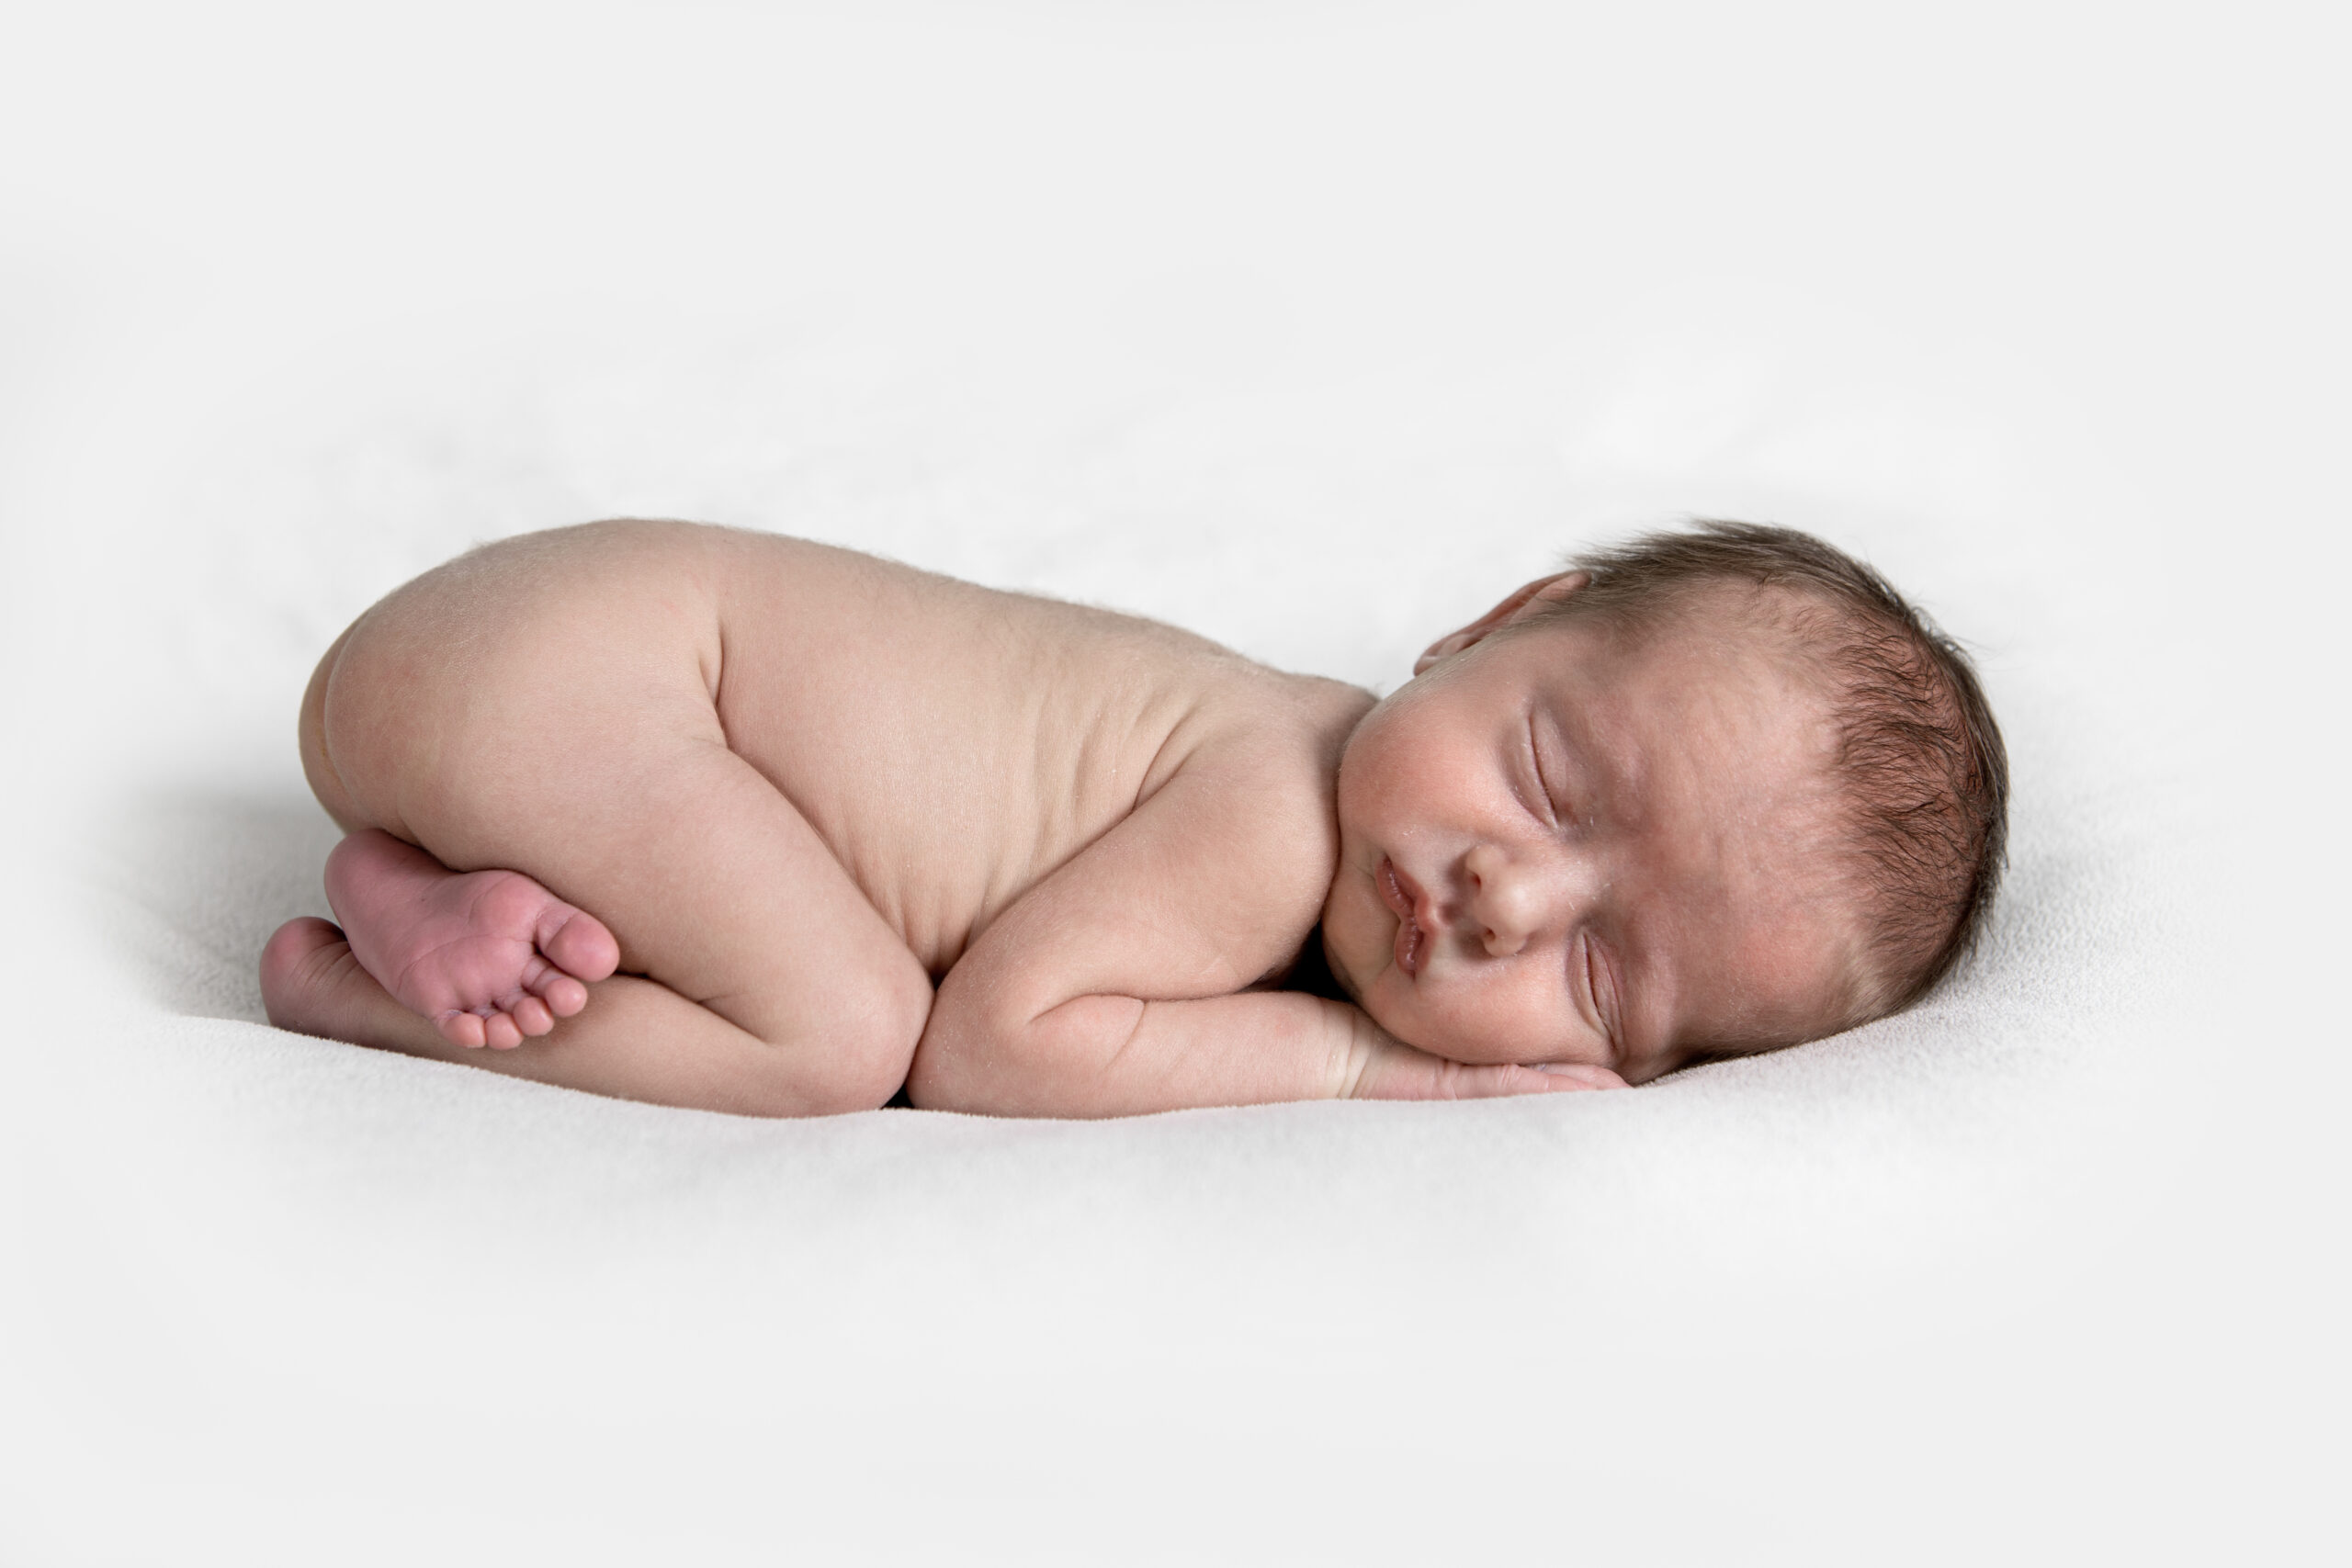 Het prille leven van newbornbaby's. Wat is er mooier? Bewaar dit moment met de newbornfotoreportage van Foto di Vita